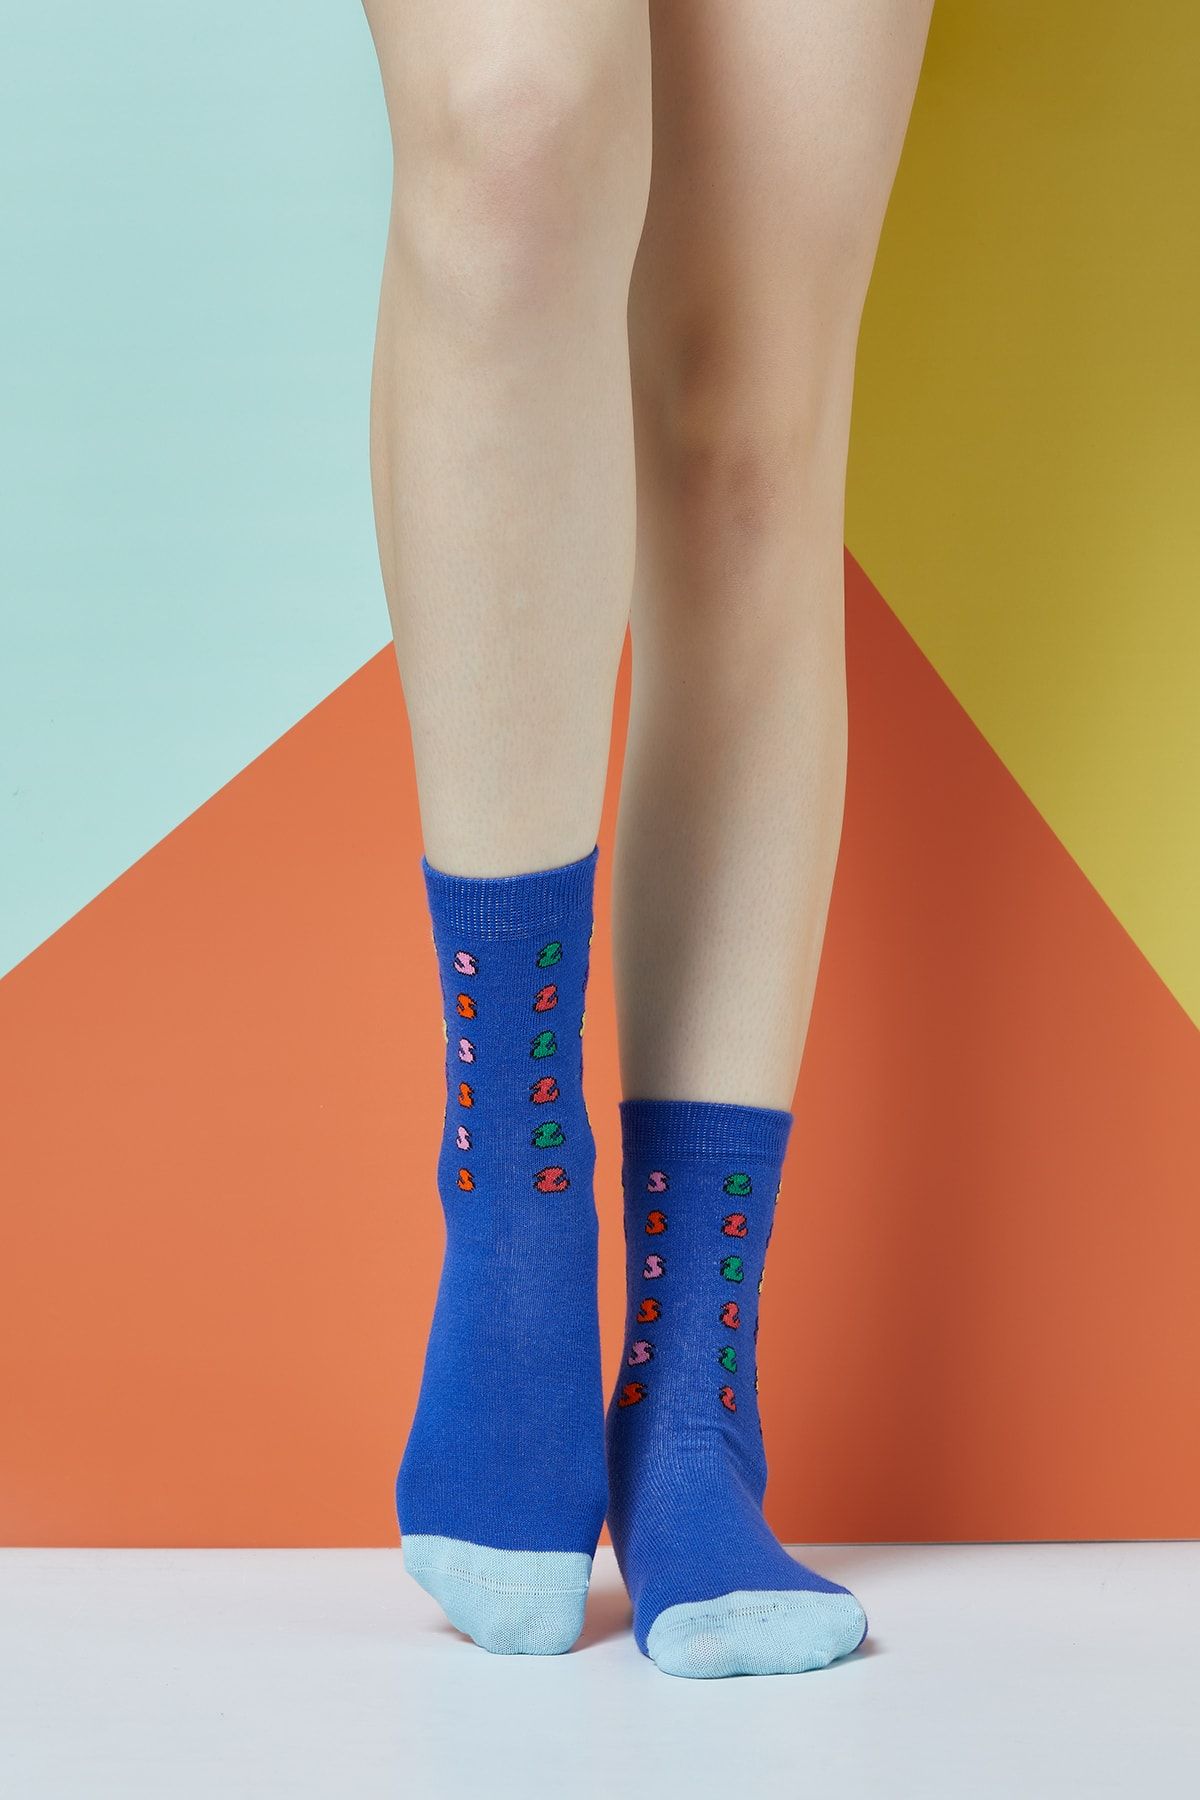 The Socks Company Kadın Çok Renkli Follow Us Desenli Çorap